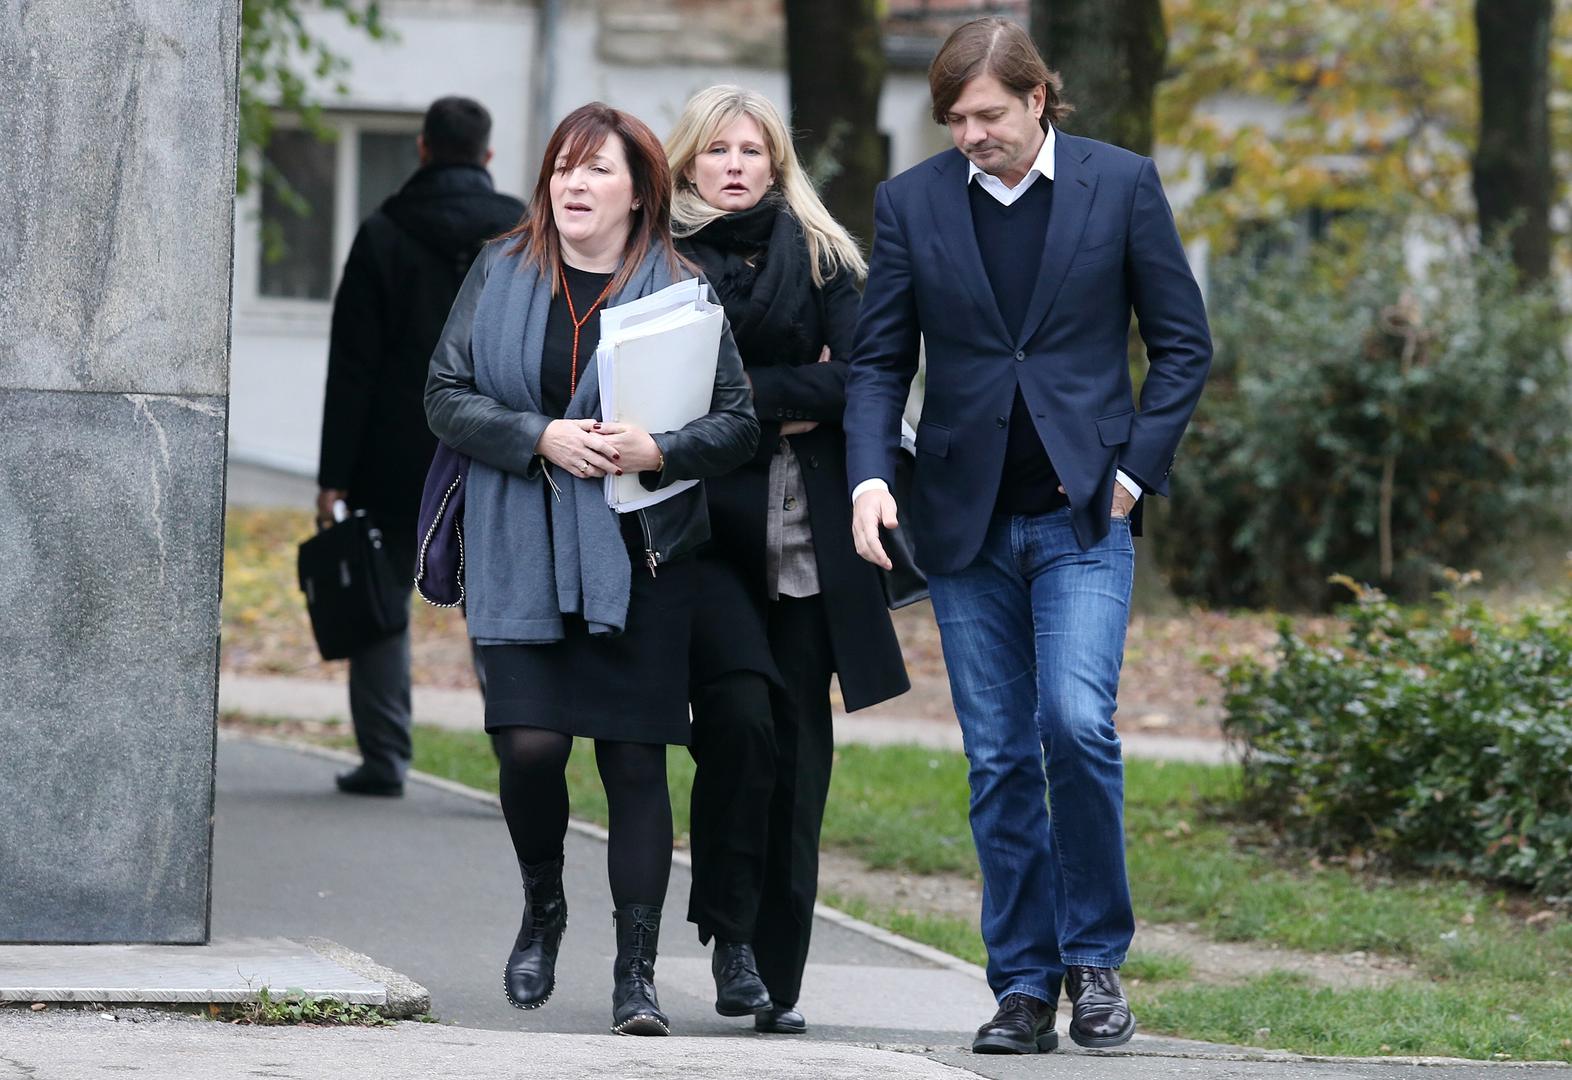 Milan Popović na sud je došao u pratnji svojih odvjetnica  Eleonore Katić i Nataše Pećarević.